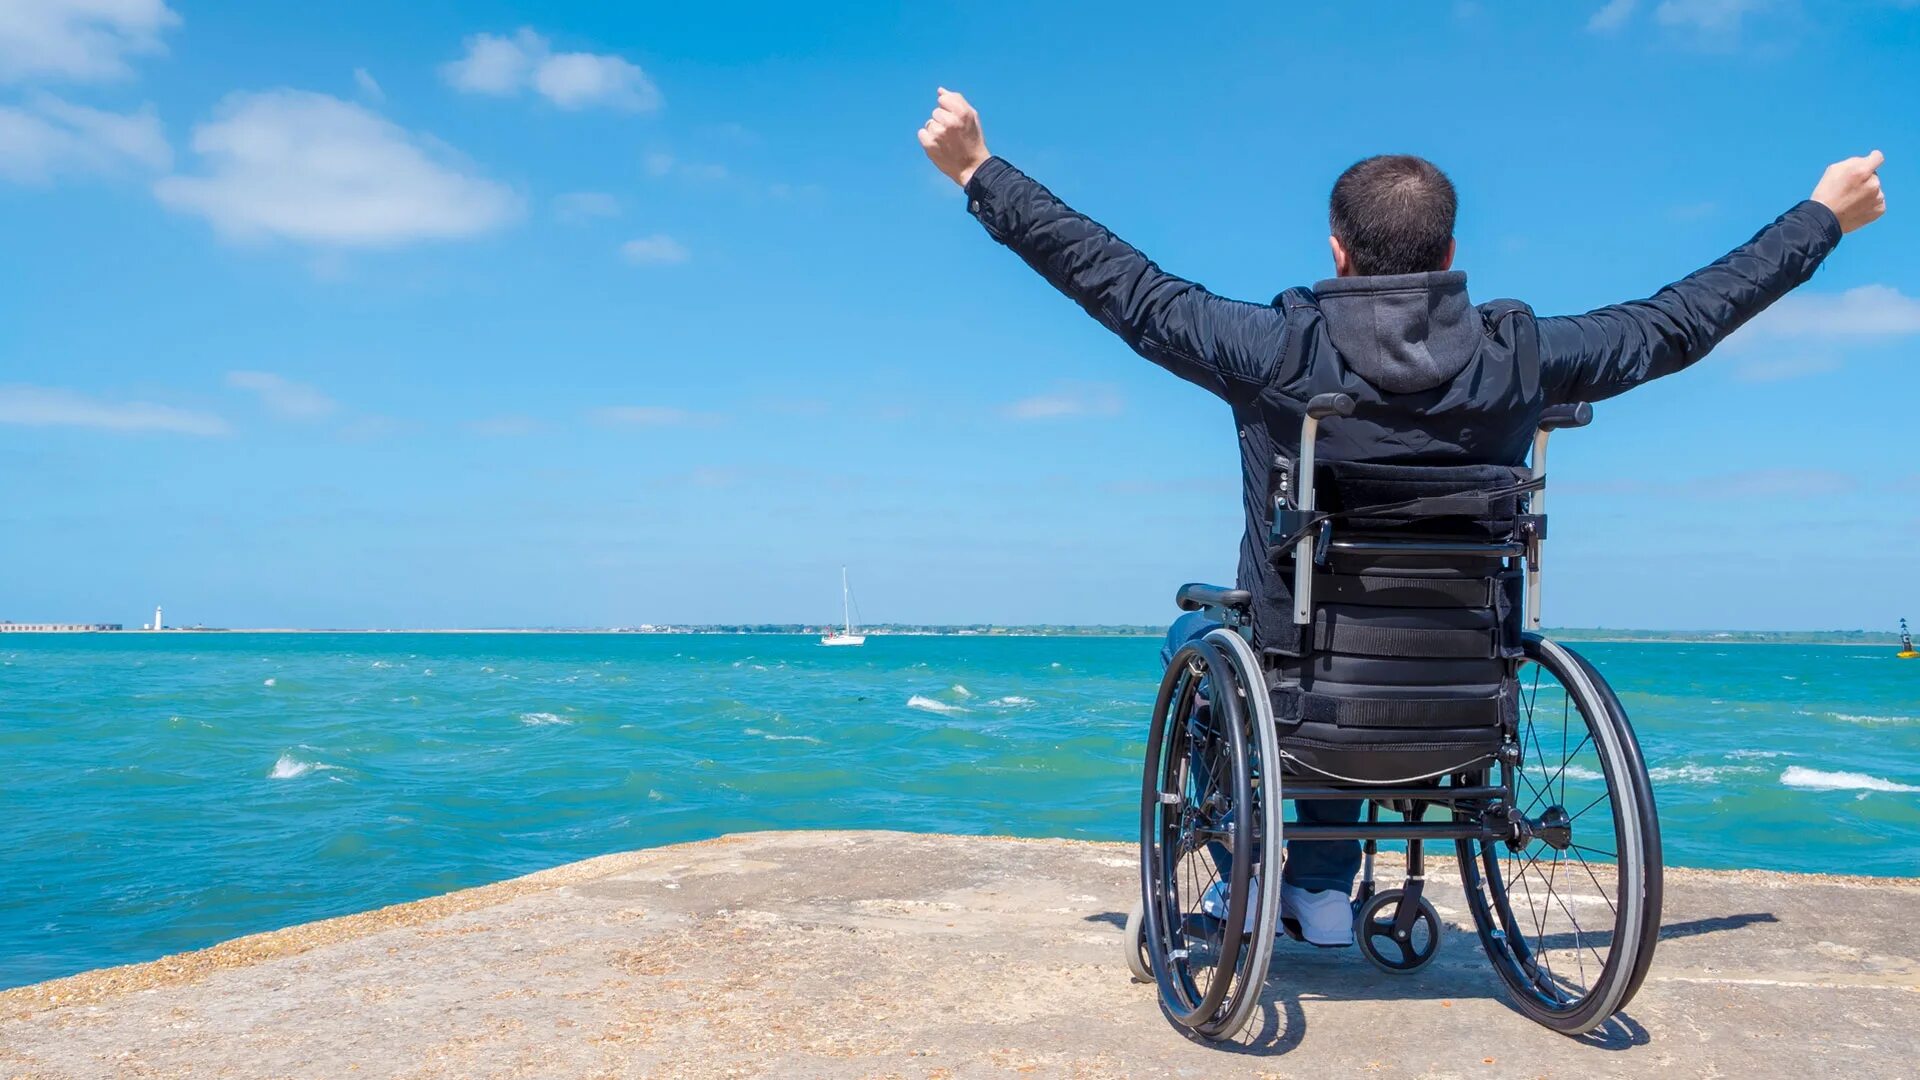 Отпуск инвалида 1с. Коляска для инвалидов. Человек в инвалидной коляске. Инвалидо н аколяске. Bydfbkl YF rjkzcrt.